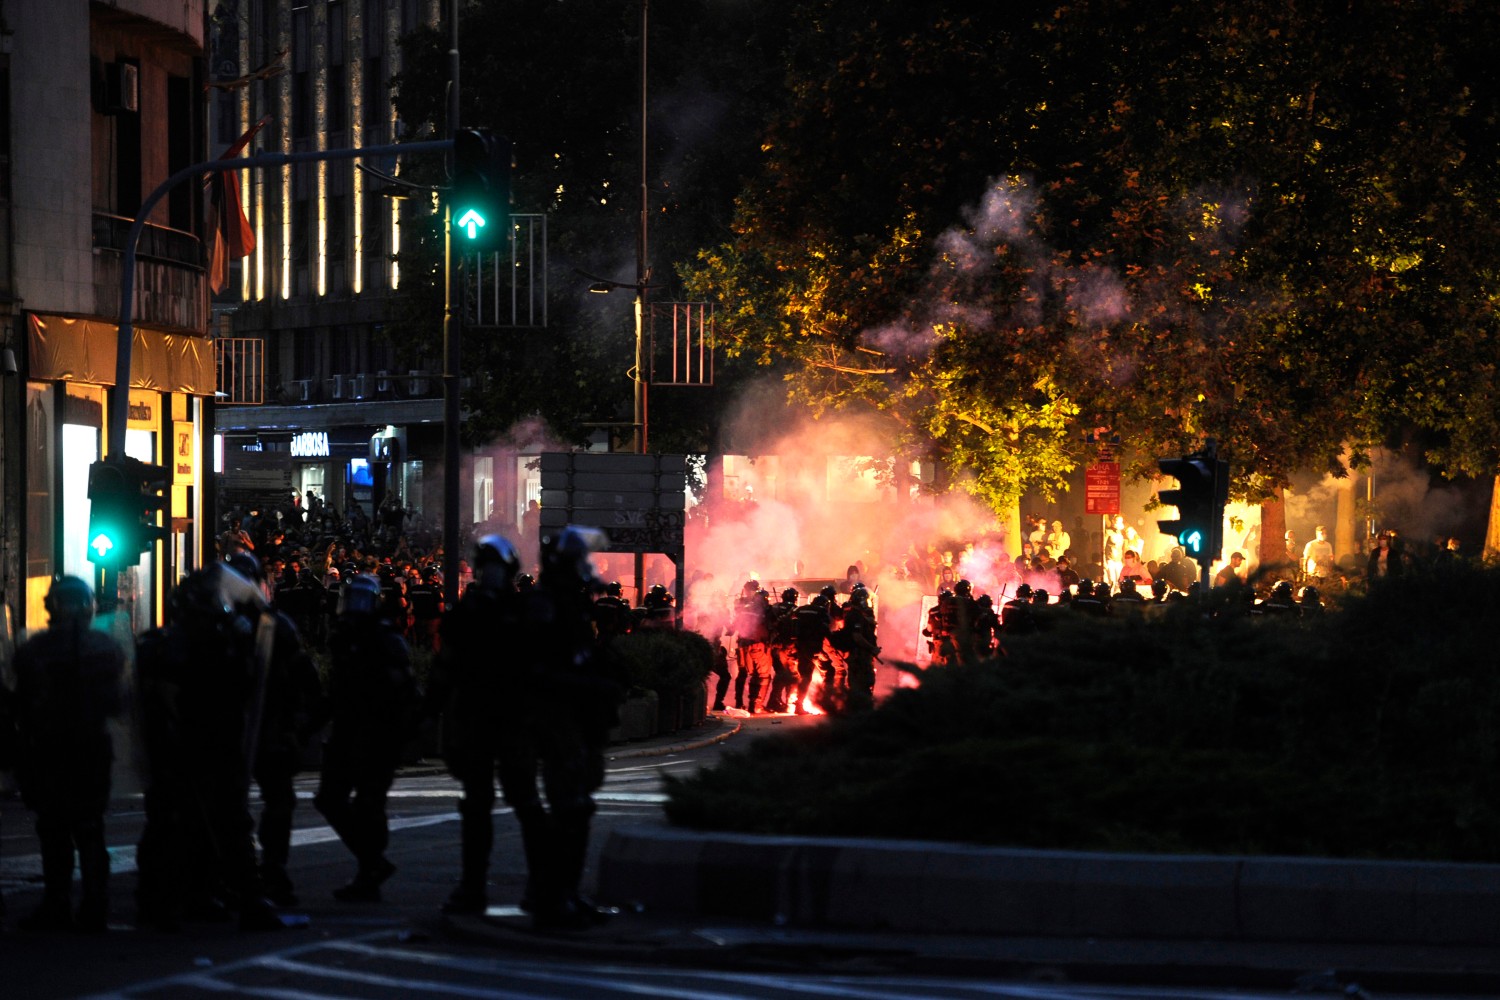 Sukobi između demonstranata i policije kod Trga Nikole Pašića u Beogradu, 08. jul 2020. (Foto: Tanjug/Tara Radovanović)